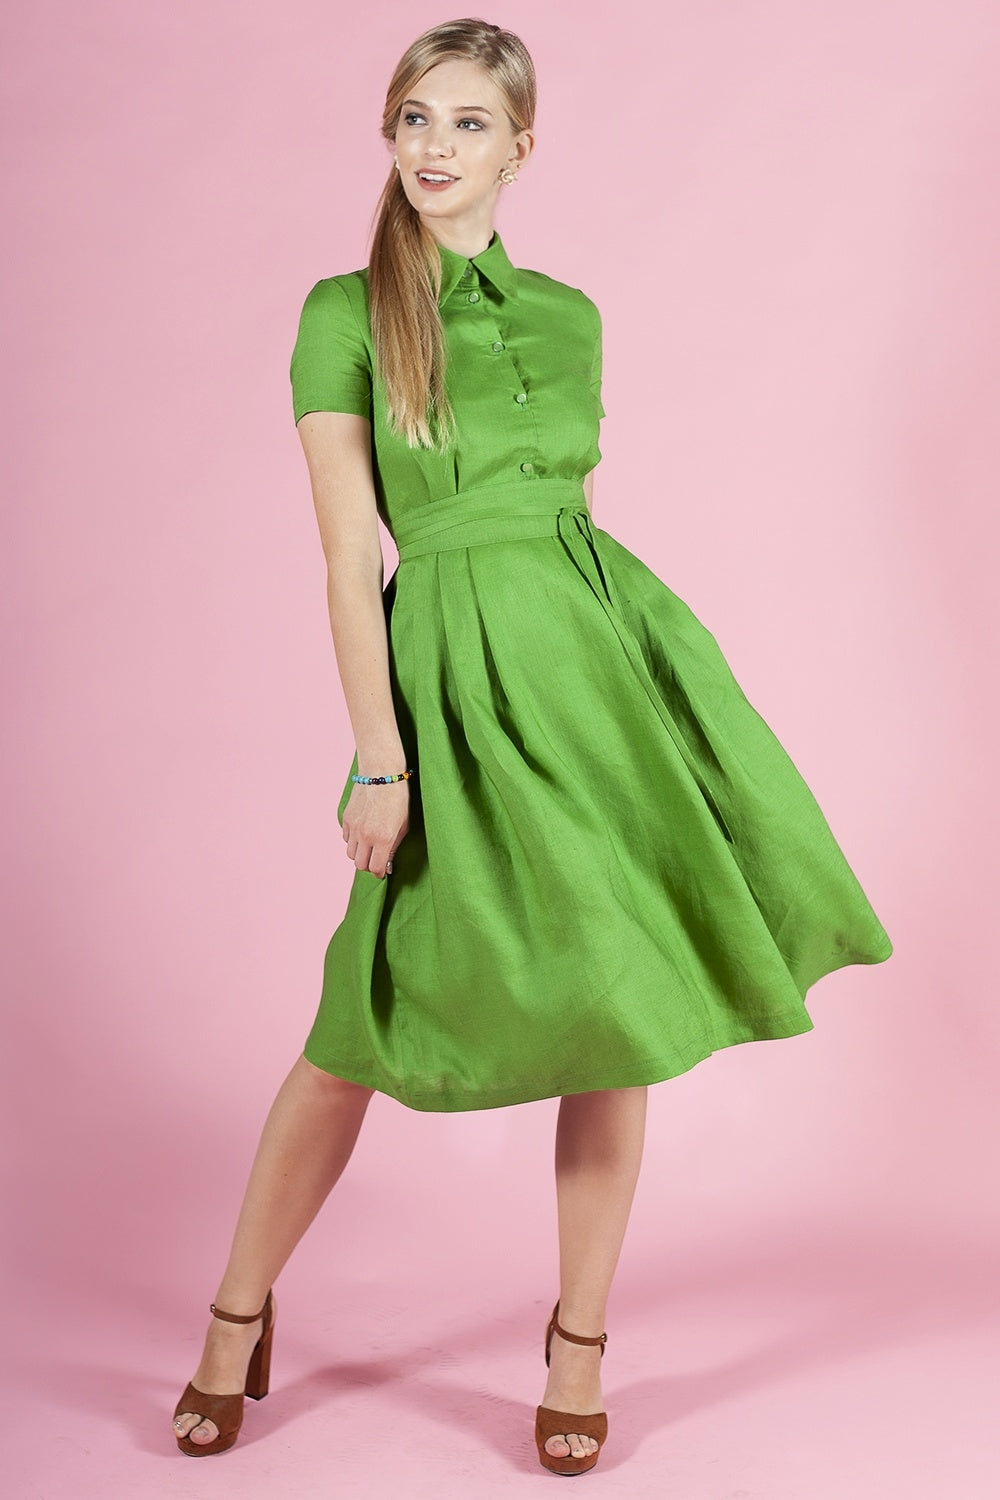 Zaļa kleita ar podziņām